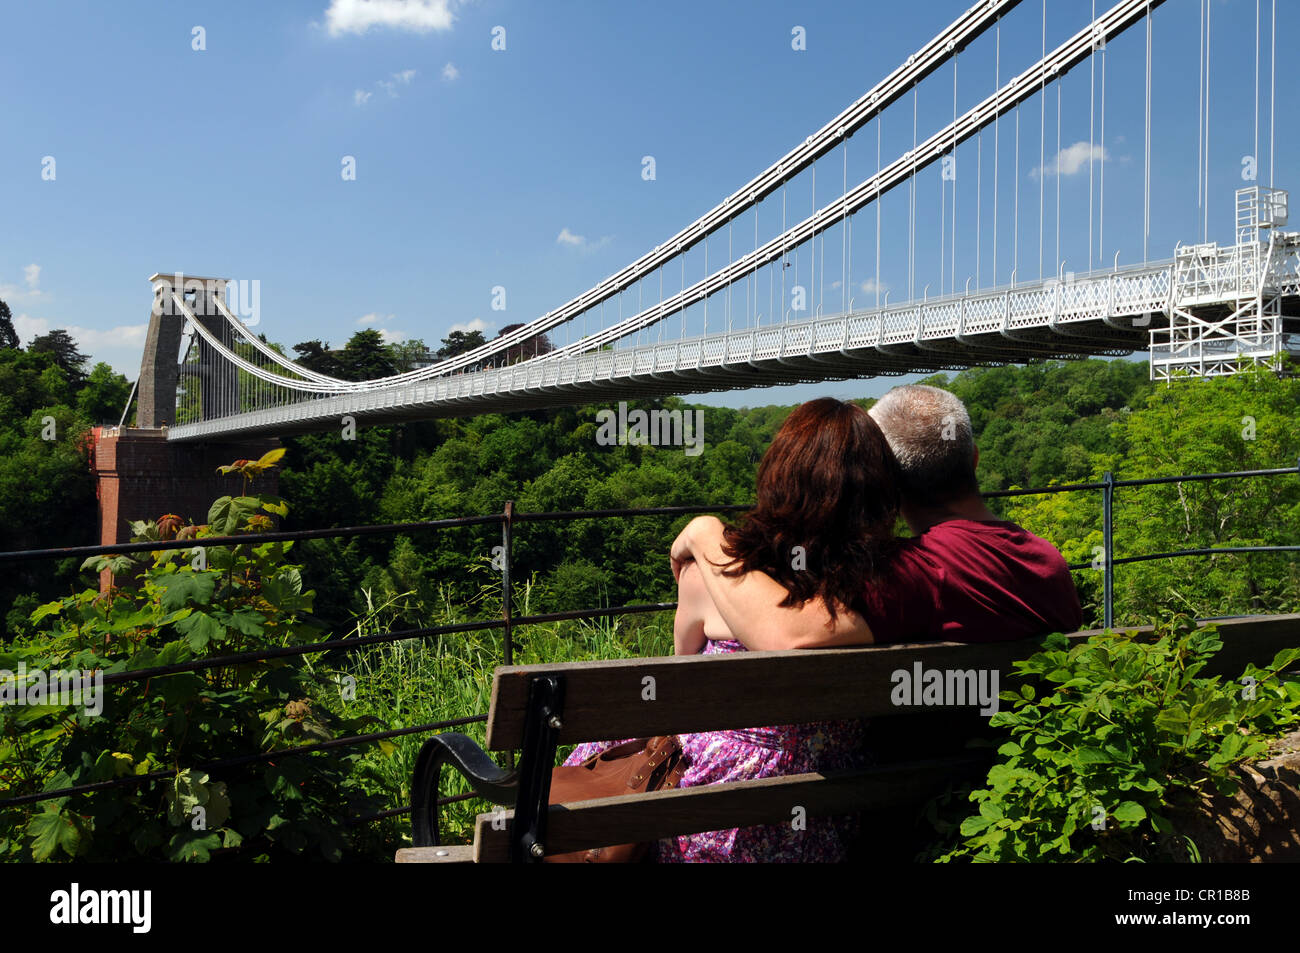 Il ponte sospeso di Clifton, Bristol, Somerset, Inghilterra, Regno Unito Foto Stock